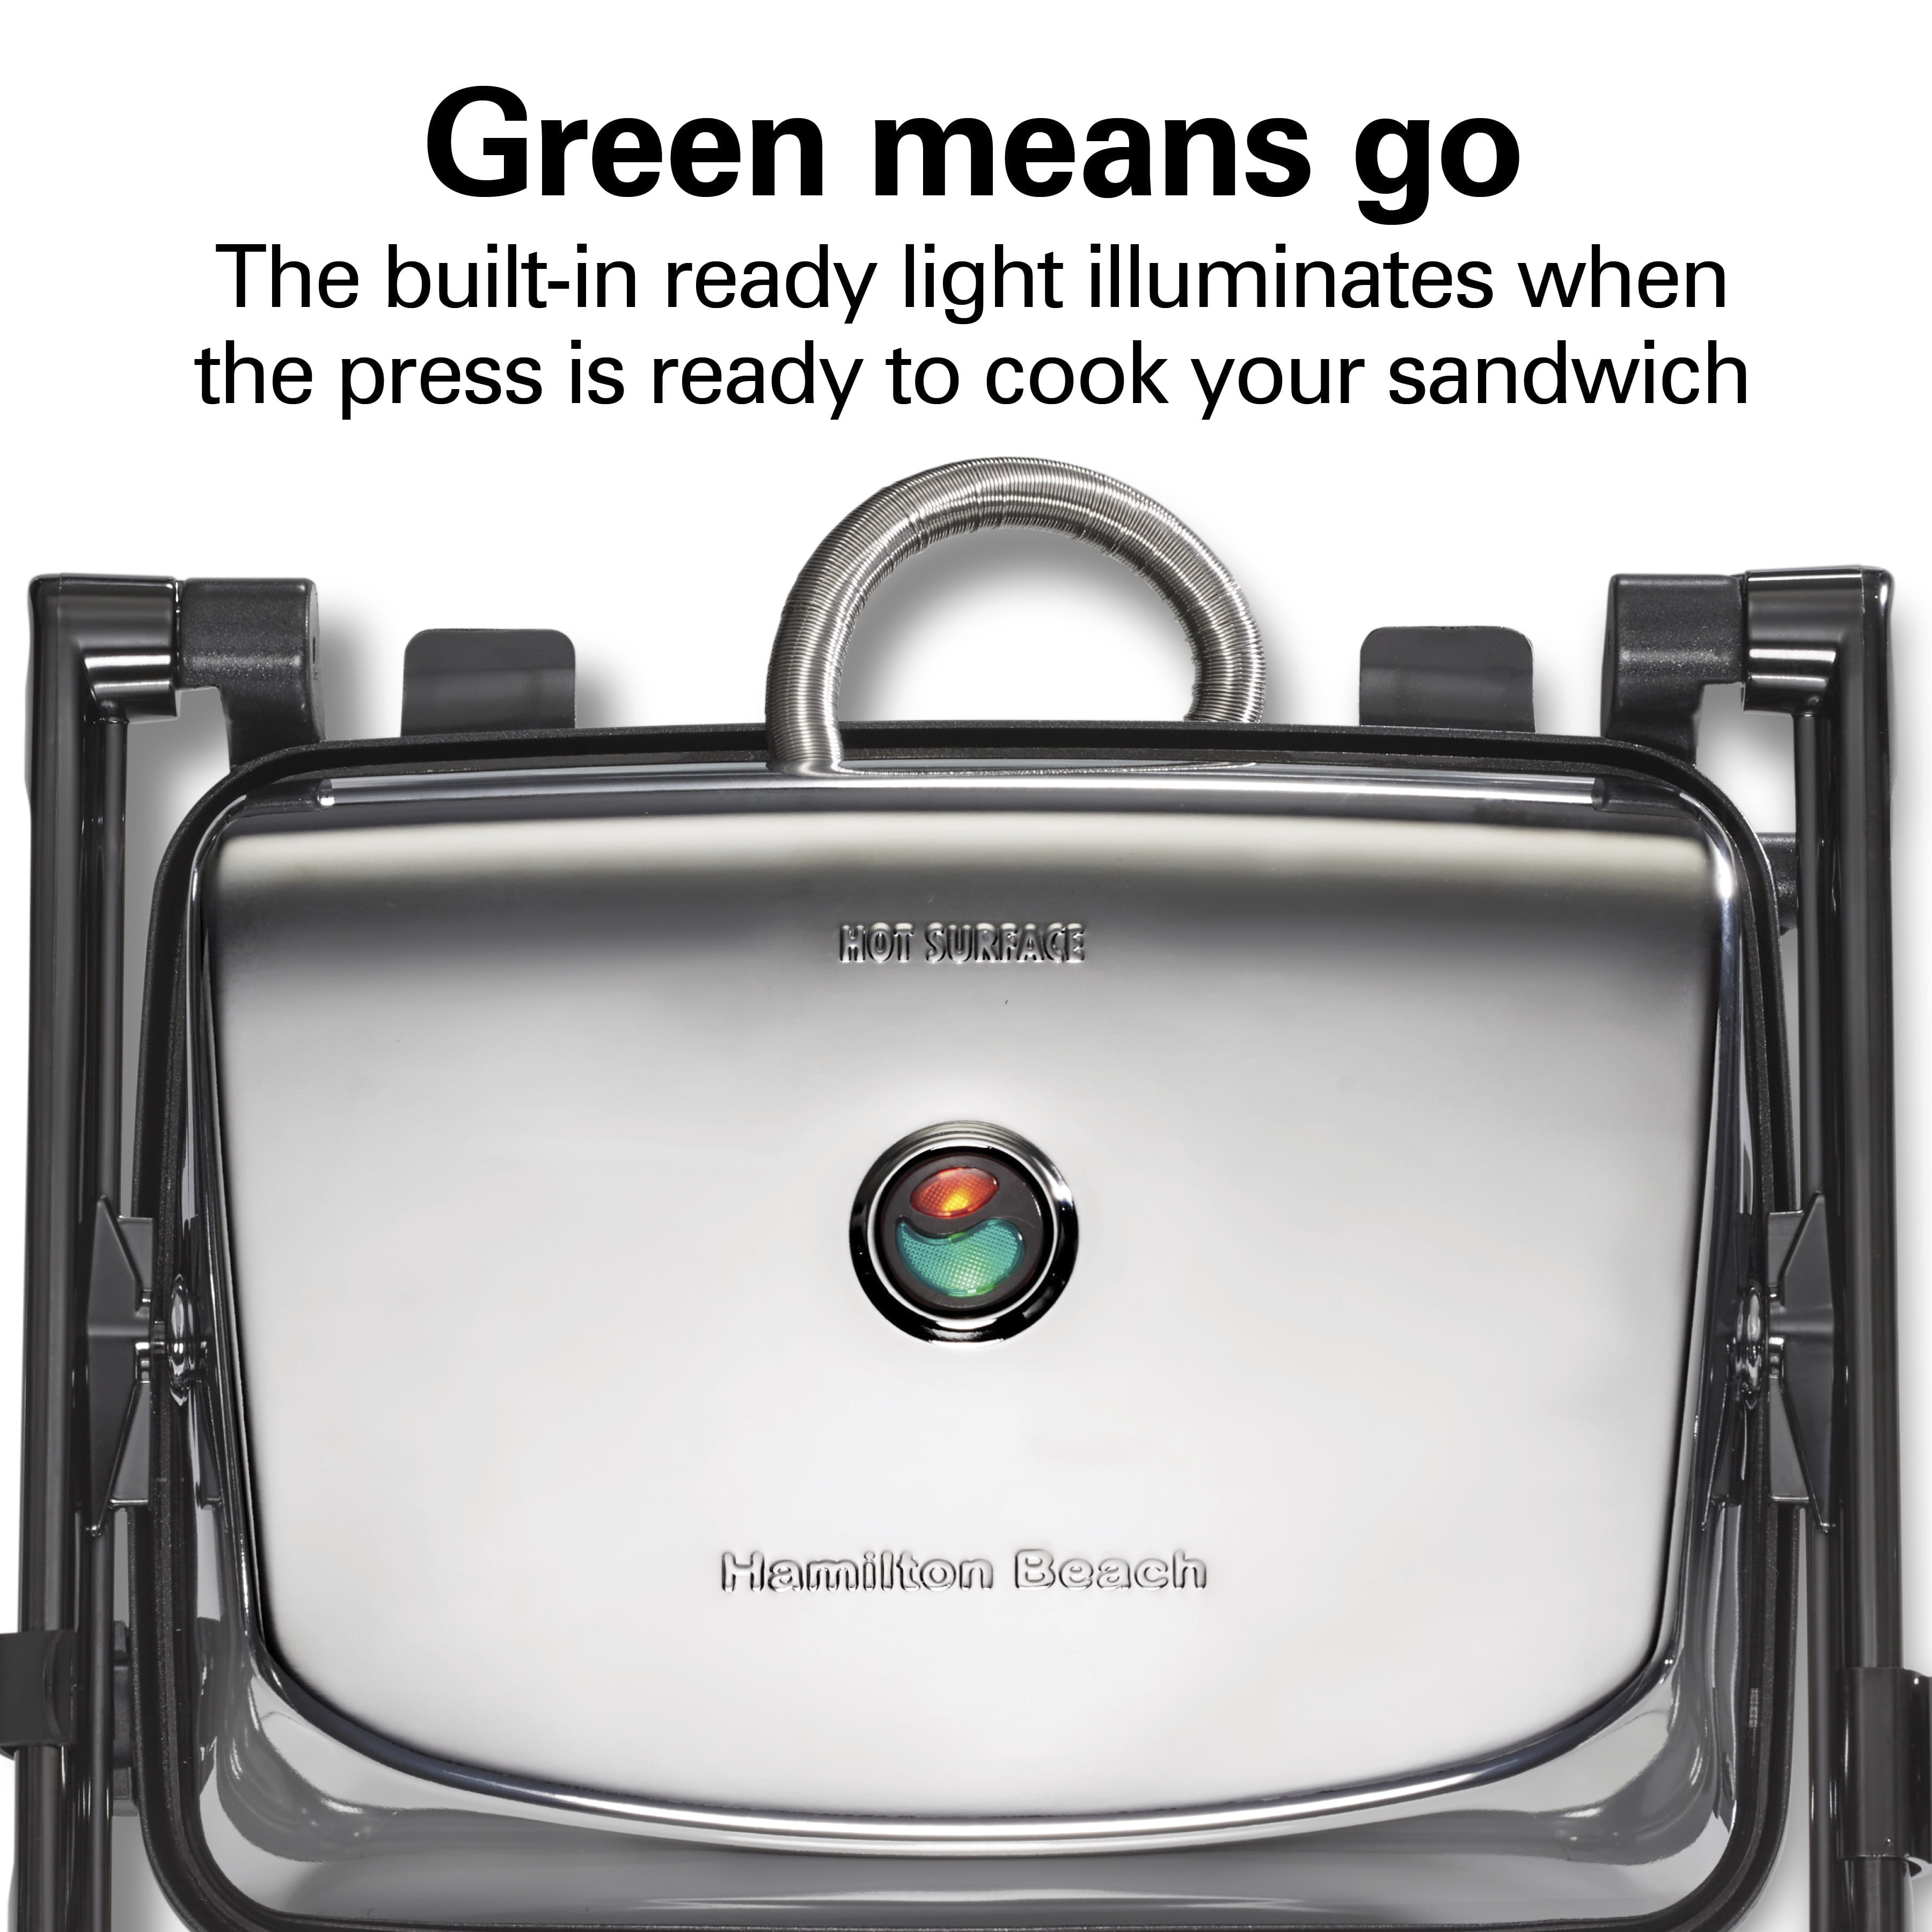 Hamilton Beach Panini Press Gourmet Sandwich Maker Chrome 25460A